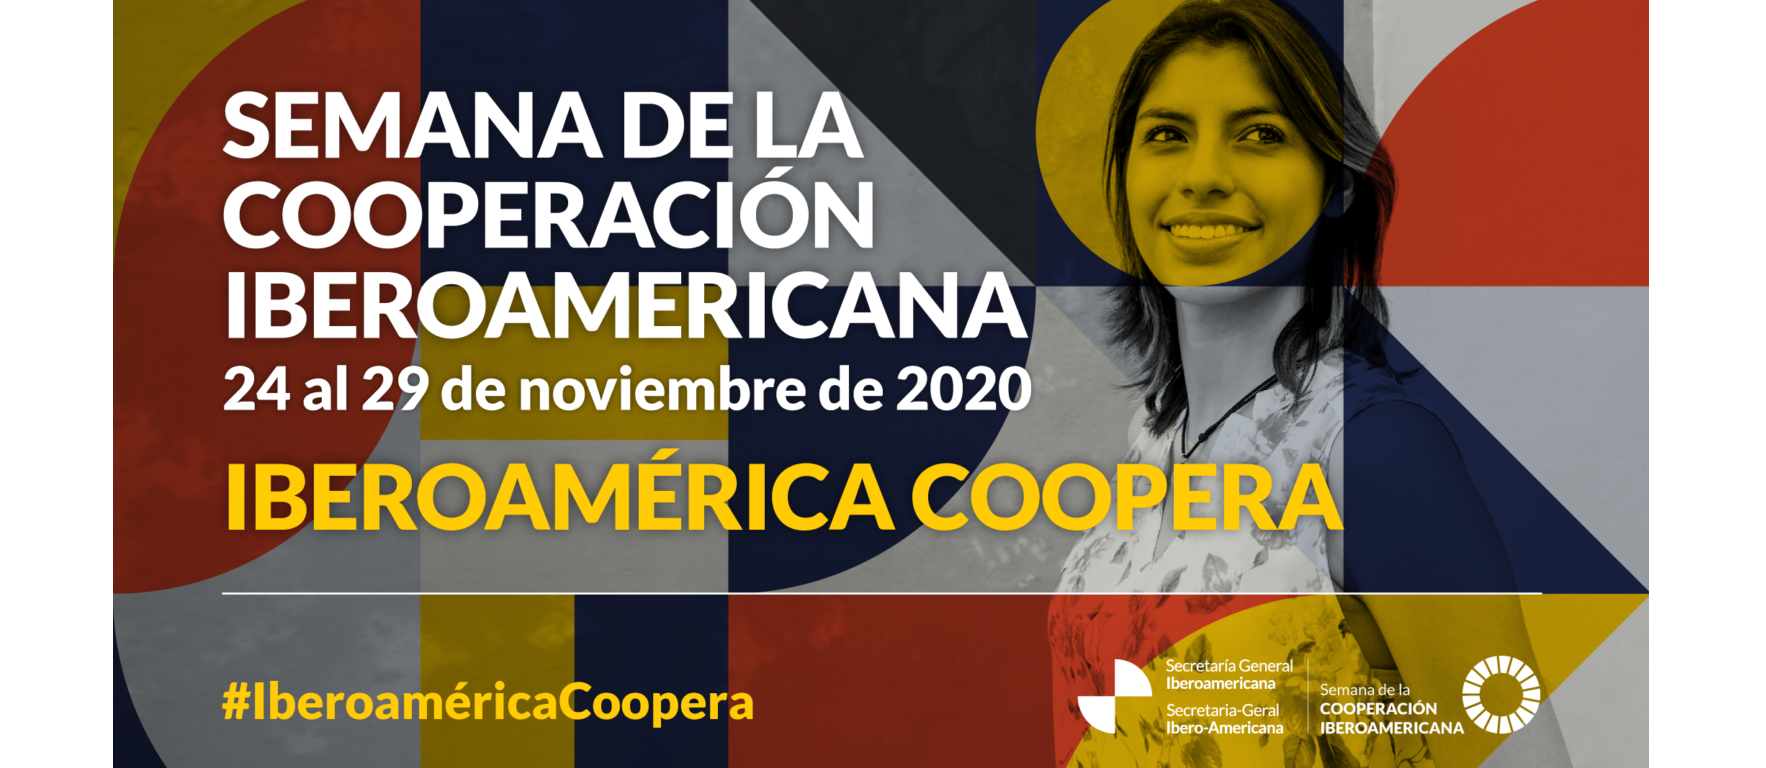 "Iberoamérica coopera" en la semana de la cooperación iberoamericana 2020